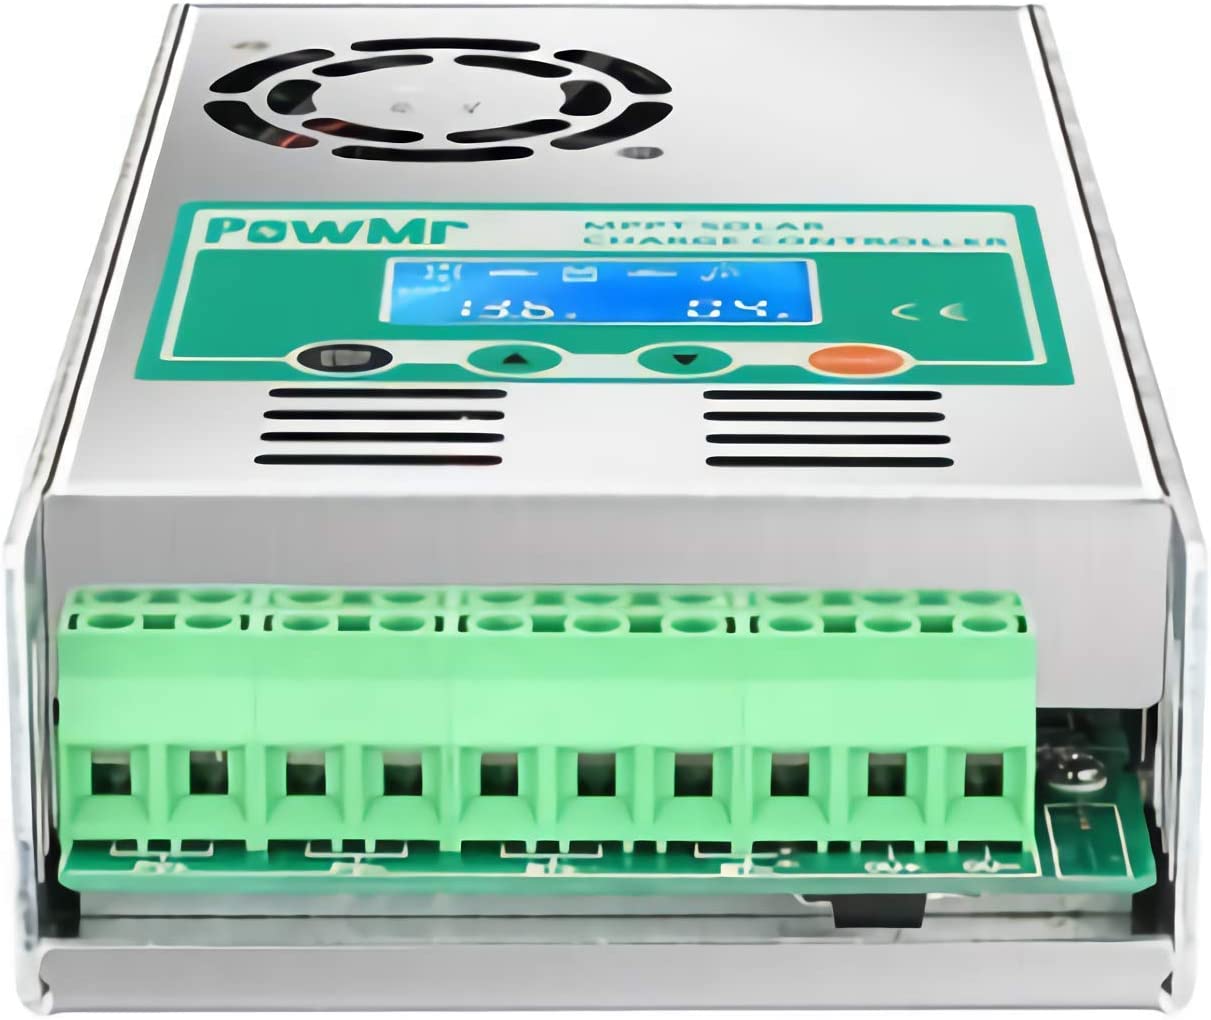 Le contrôleur de charge solaire PowMr MPPT 60A fonctionne pour une batterie au lithium-acide au plomb 12V 24V 36V 48V avec écran LCD Entrée Max PV 190VDC